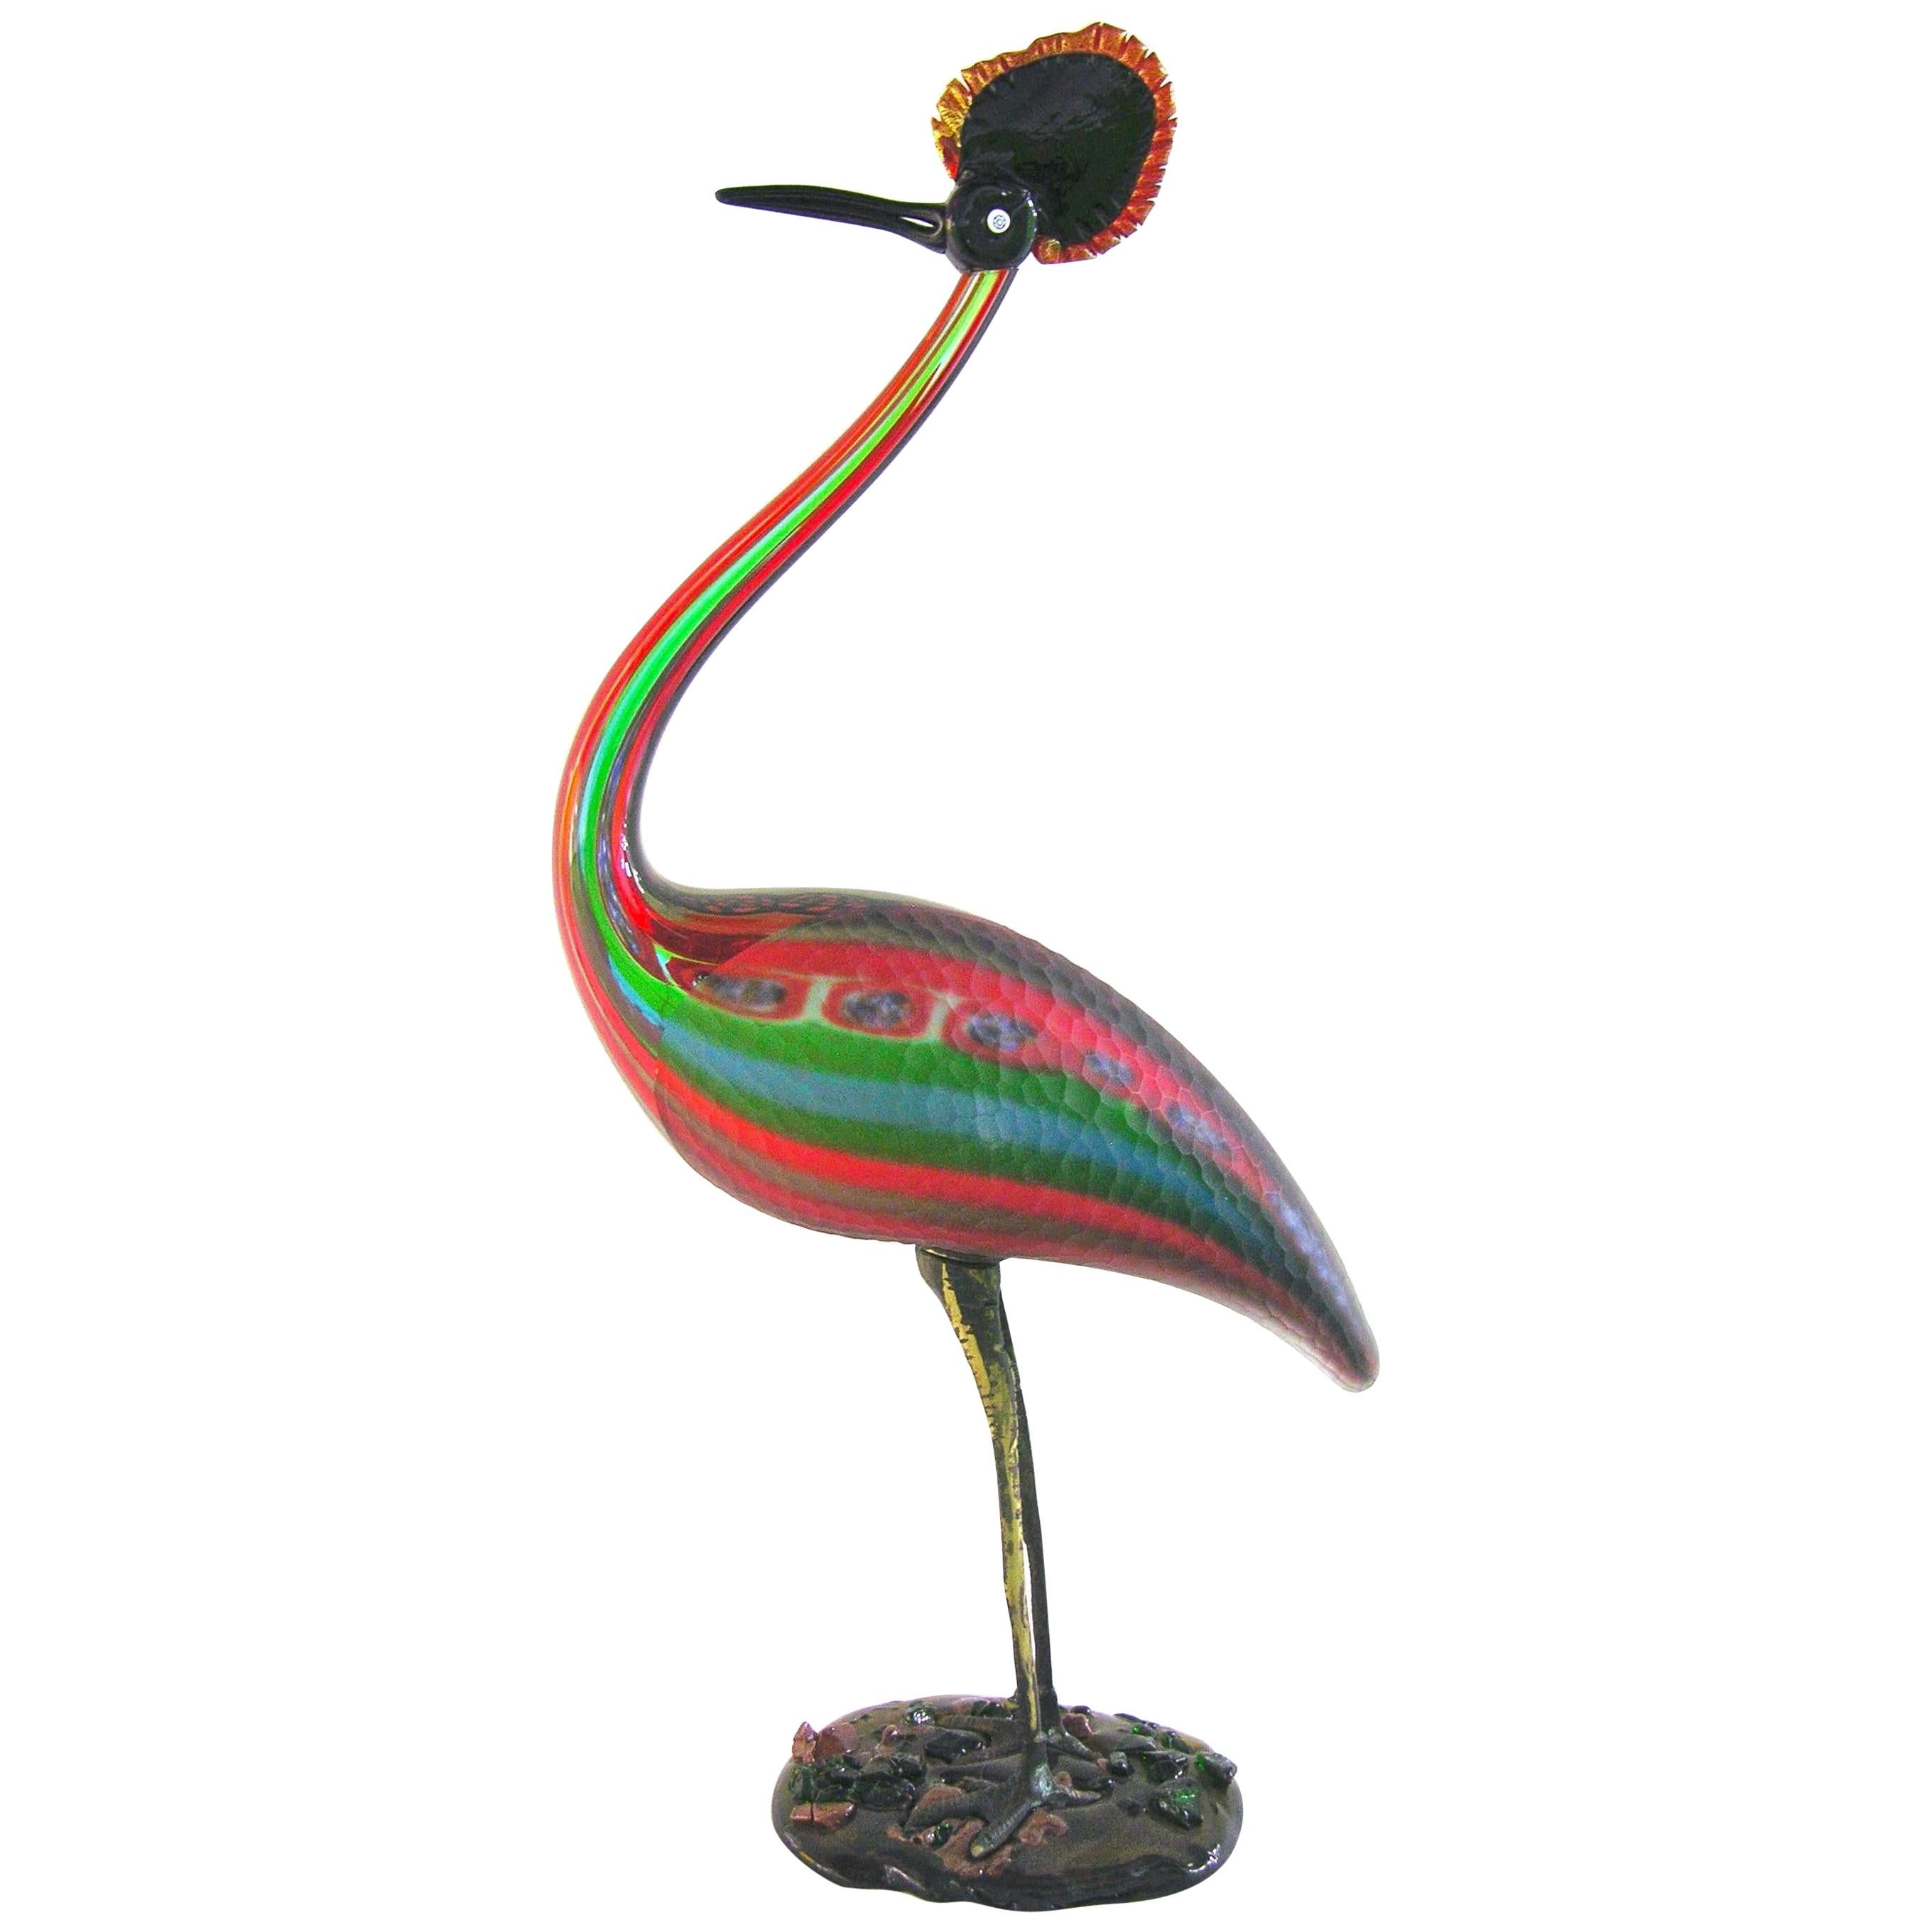 Italienische Vintage-Skulptur eines Vogels aus Glas in Rot, Blau, Grün und Grün, geformt